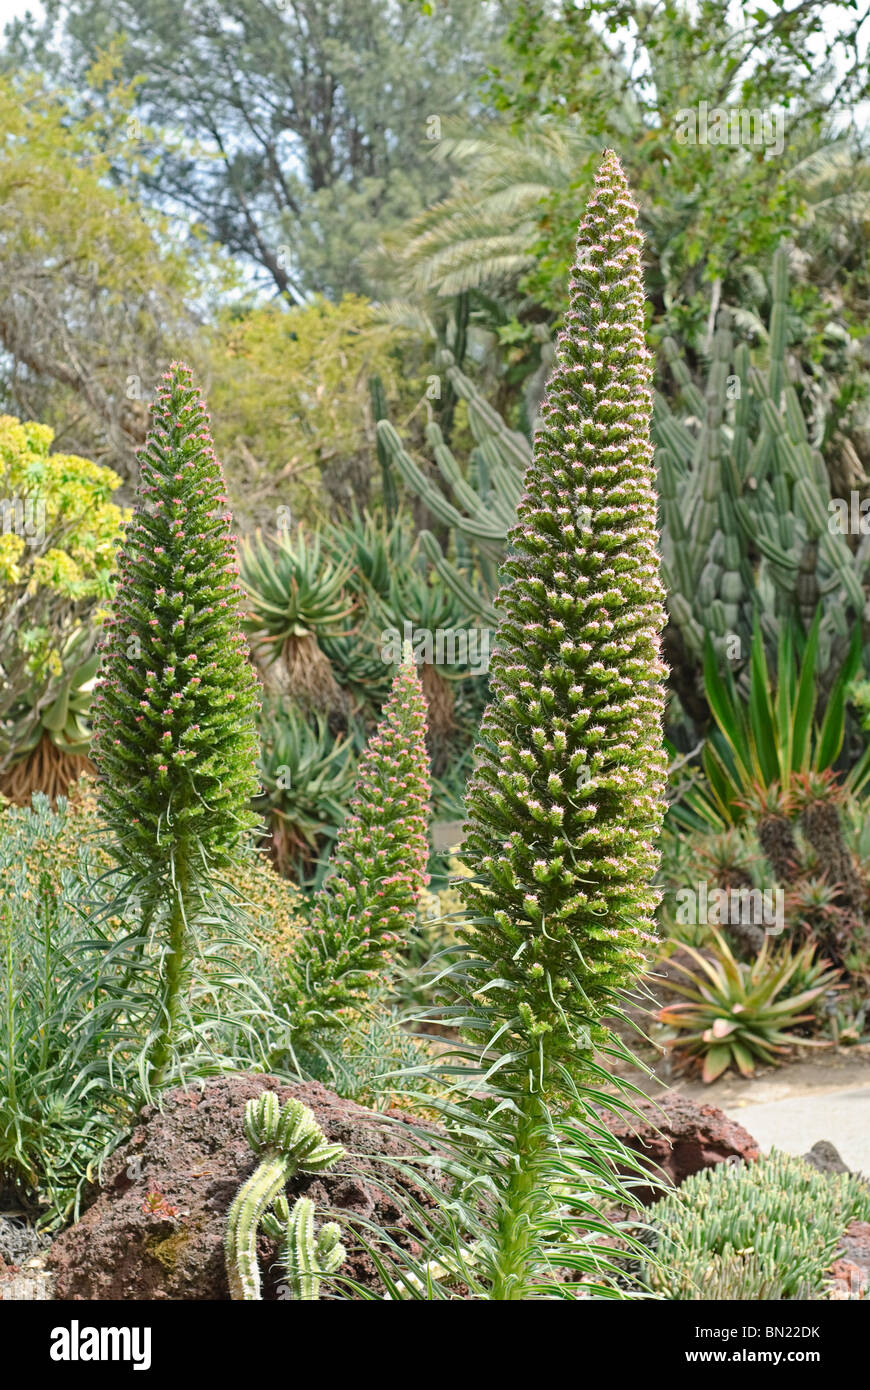 Der Tower of Jewels Pflanze, Echium Wildpretii ist eine Krautartige zweijährige Pflanze, die auf den Kanarischen Inseln endemisch ist. Stockfoto